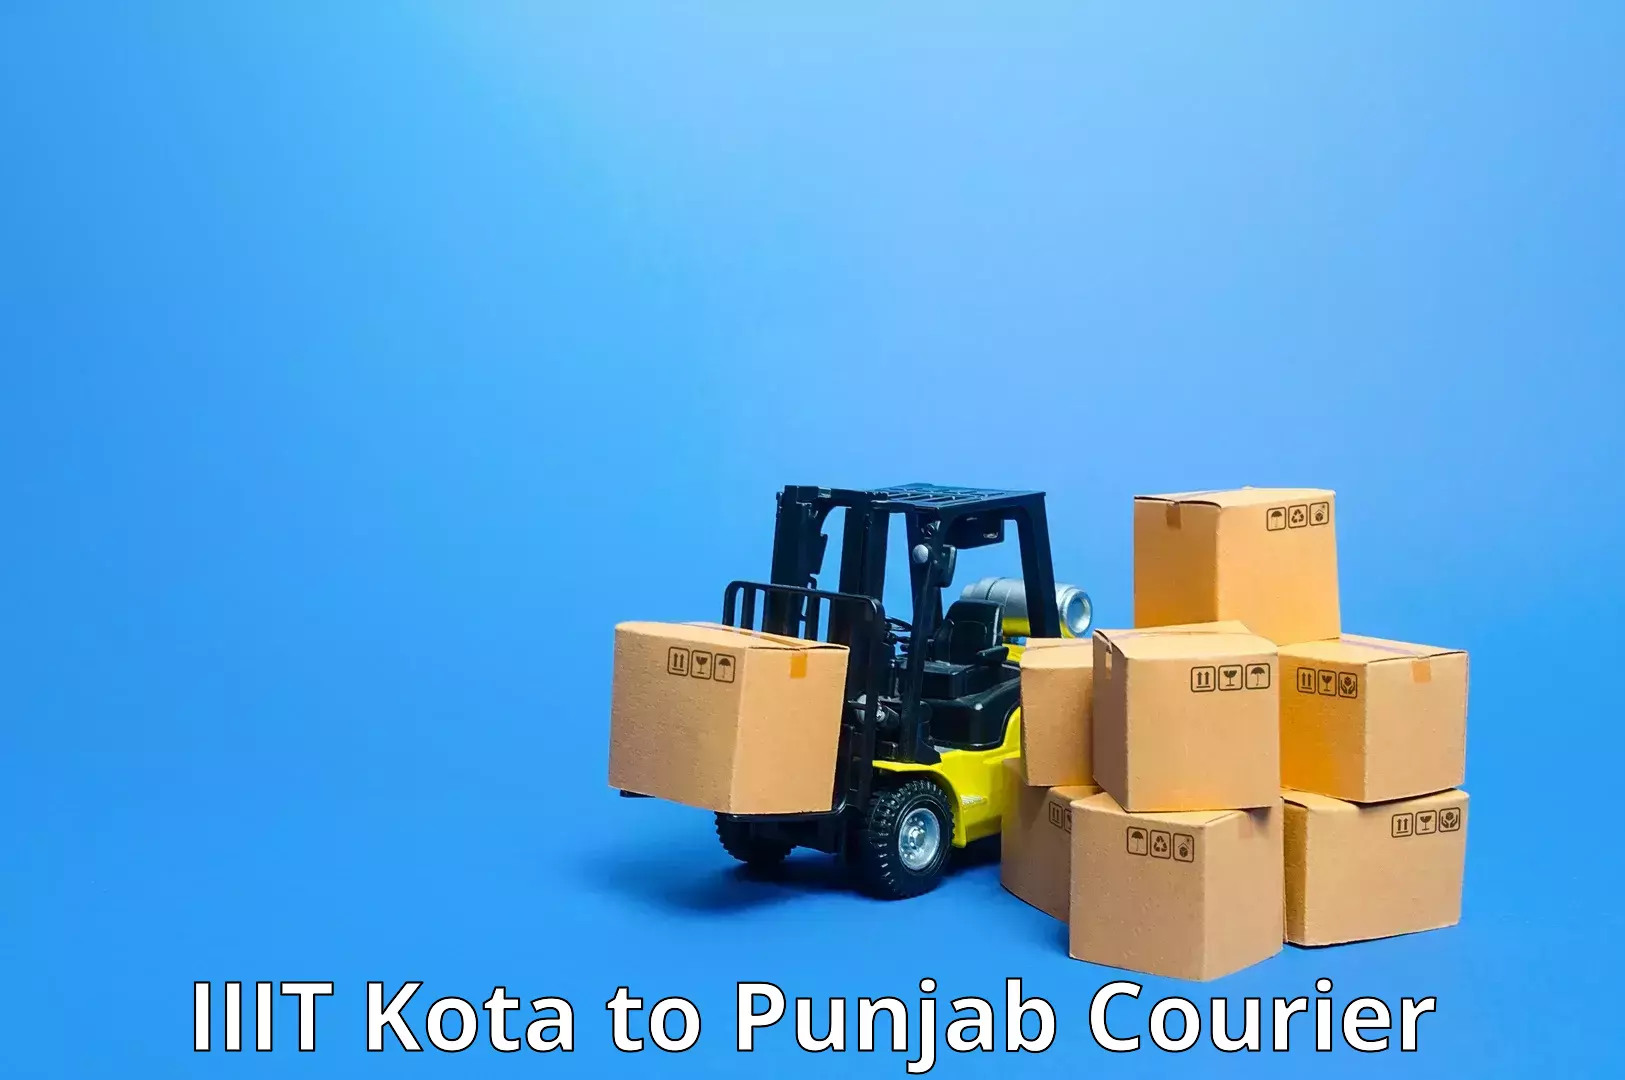 Efficient parcel transport IIIT Kota to Zirakpur